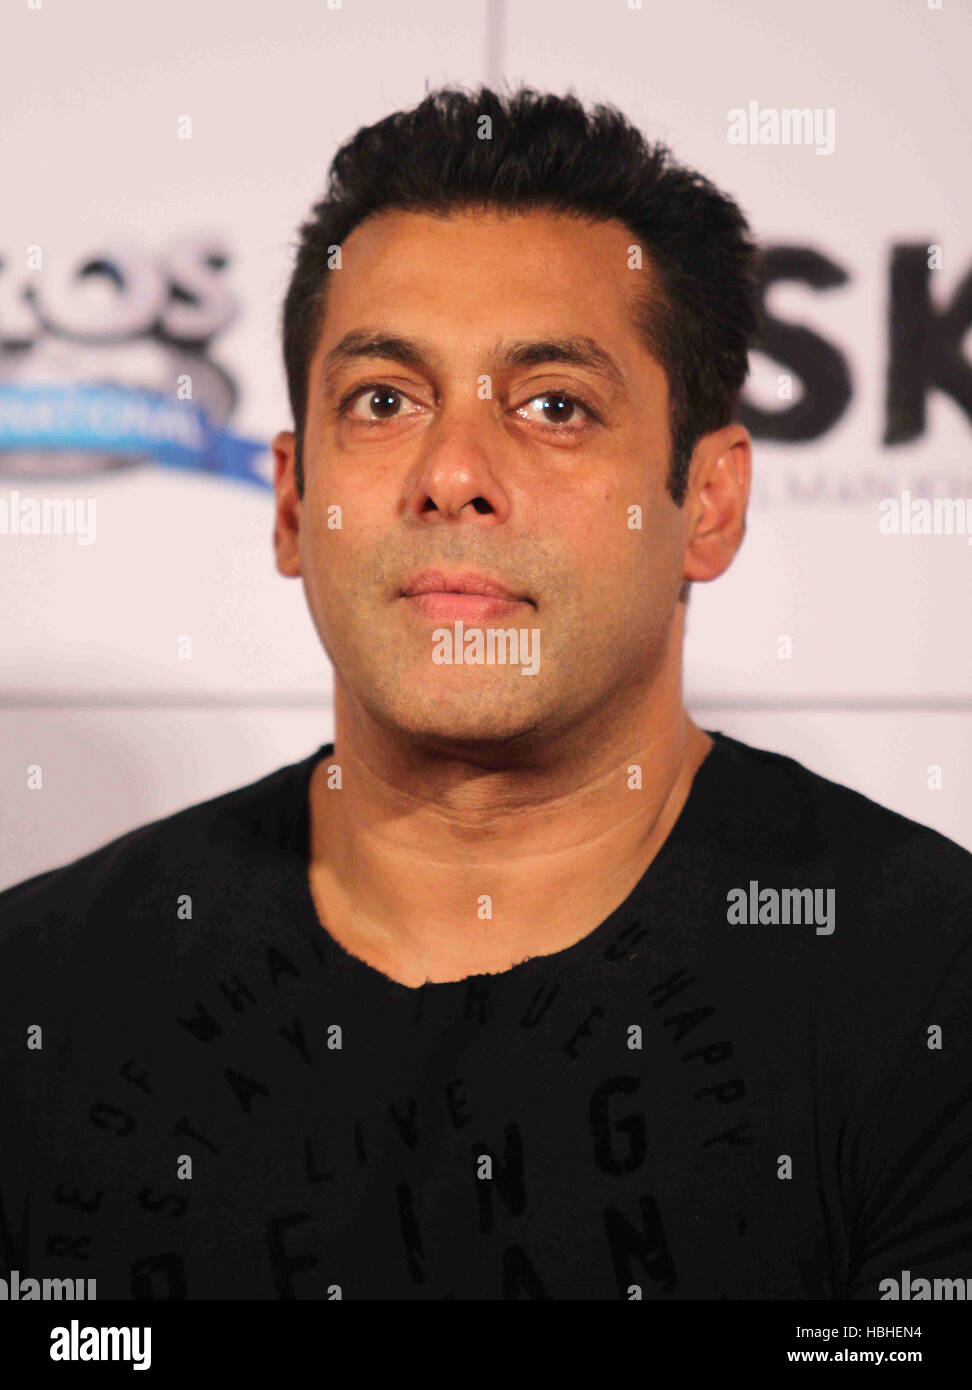 Attore di Bollywood Salman Khan durante il lancio del rimorchio di film Bajrangi Bhaijaan in Mumbai, India il 18 giugno 2015. Foto Stock